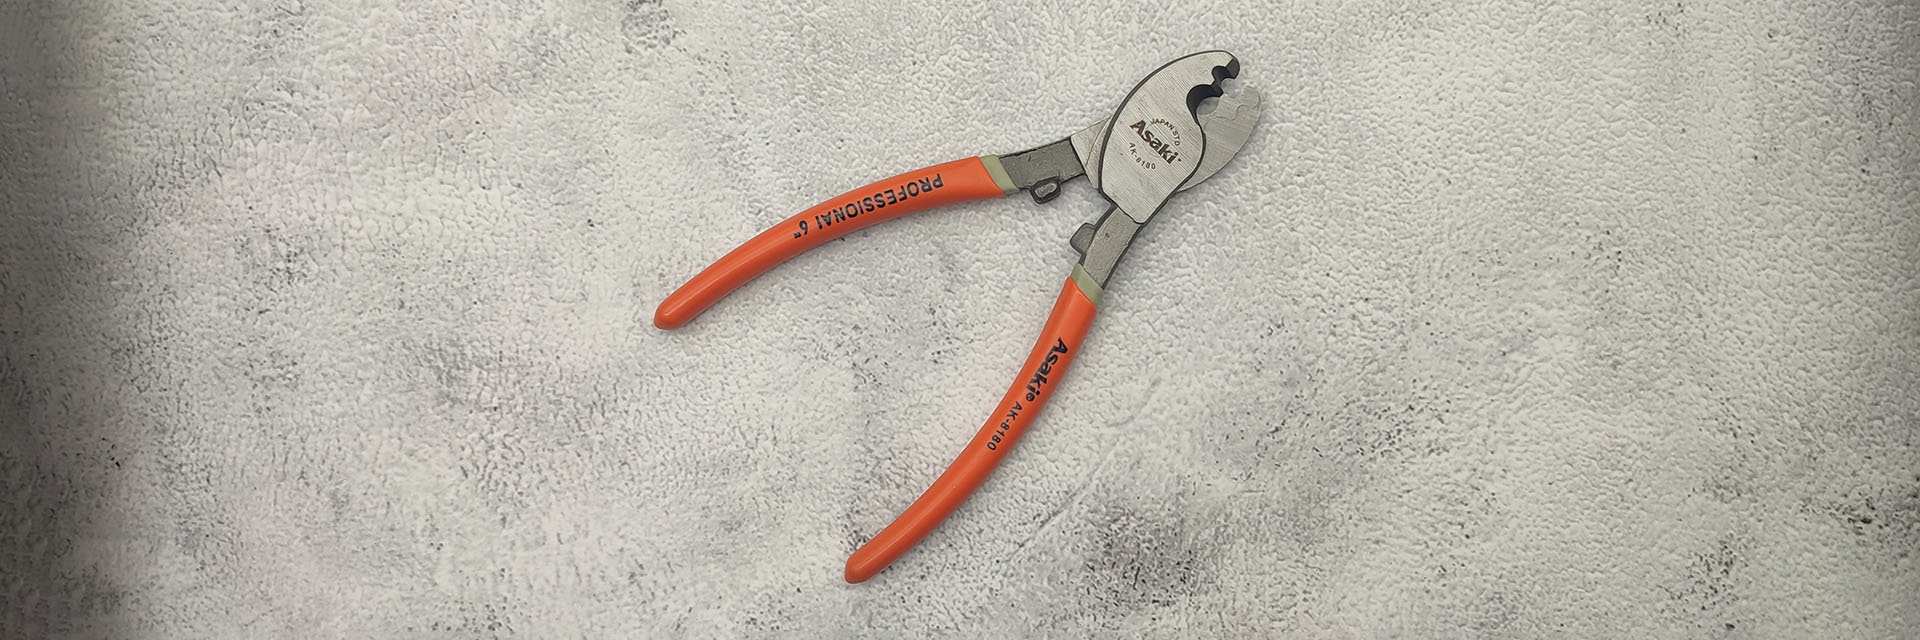 Cutting Tools - Dụng cụ cắt cáp, tôn, sắt Asaki